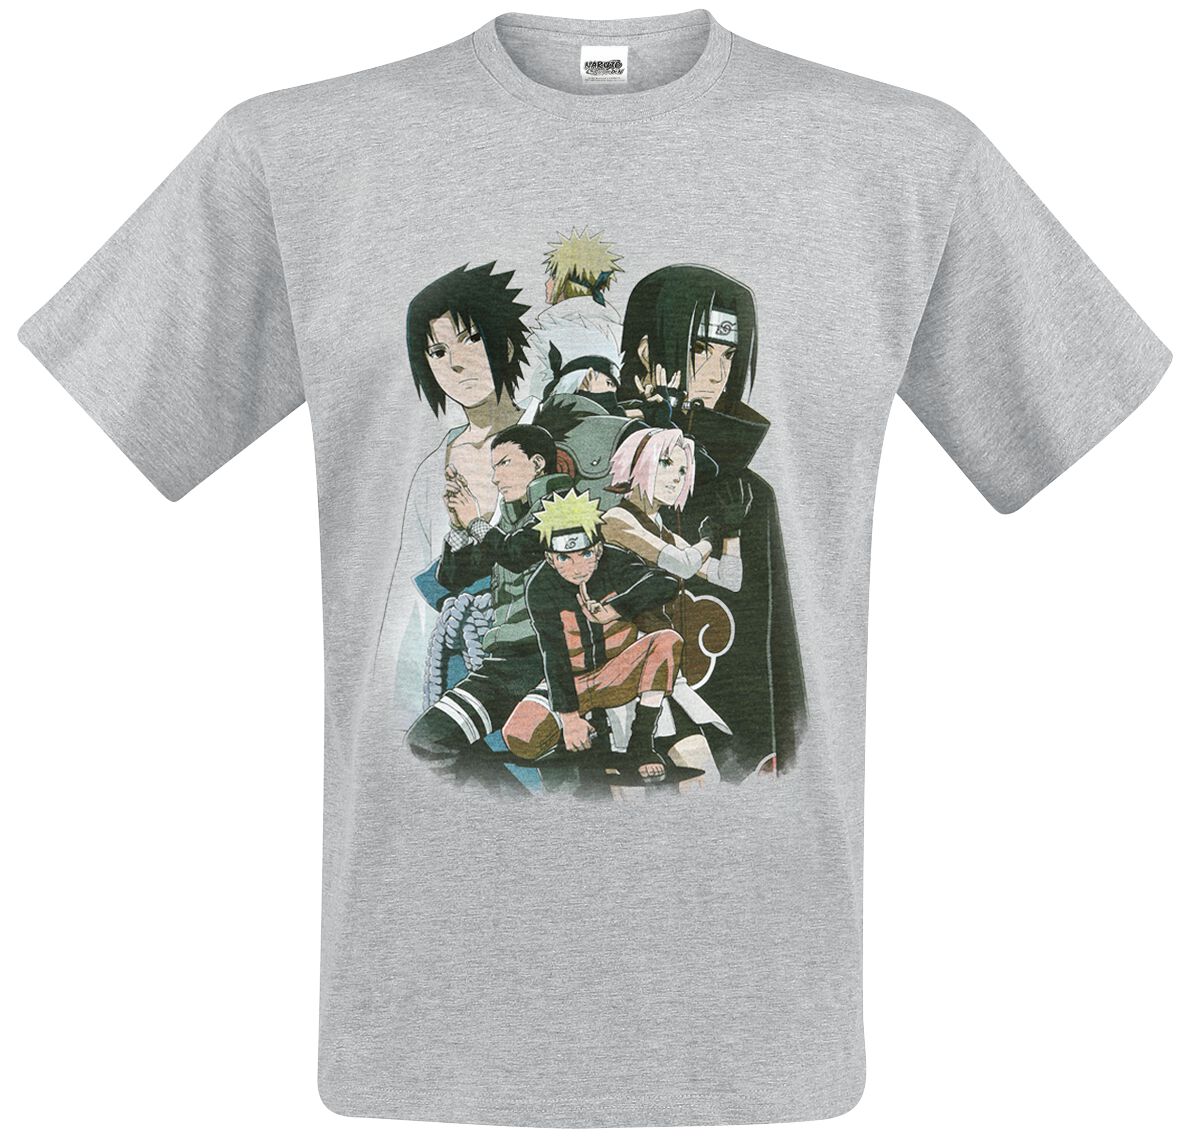 Naruto - Anime T-Shirt - Shippuden - Group - M bis XL - für Männer - Größe XL - grau meliert  - Lizenzierter Fanartikel